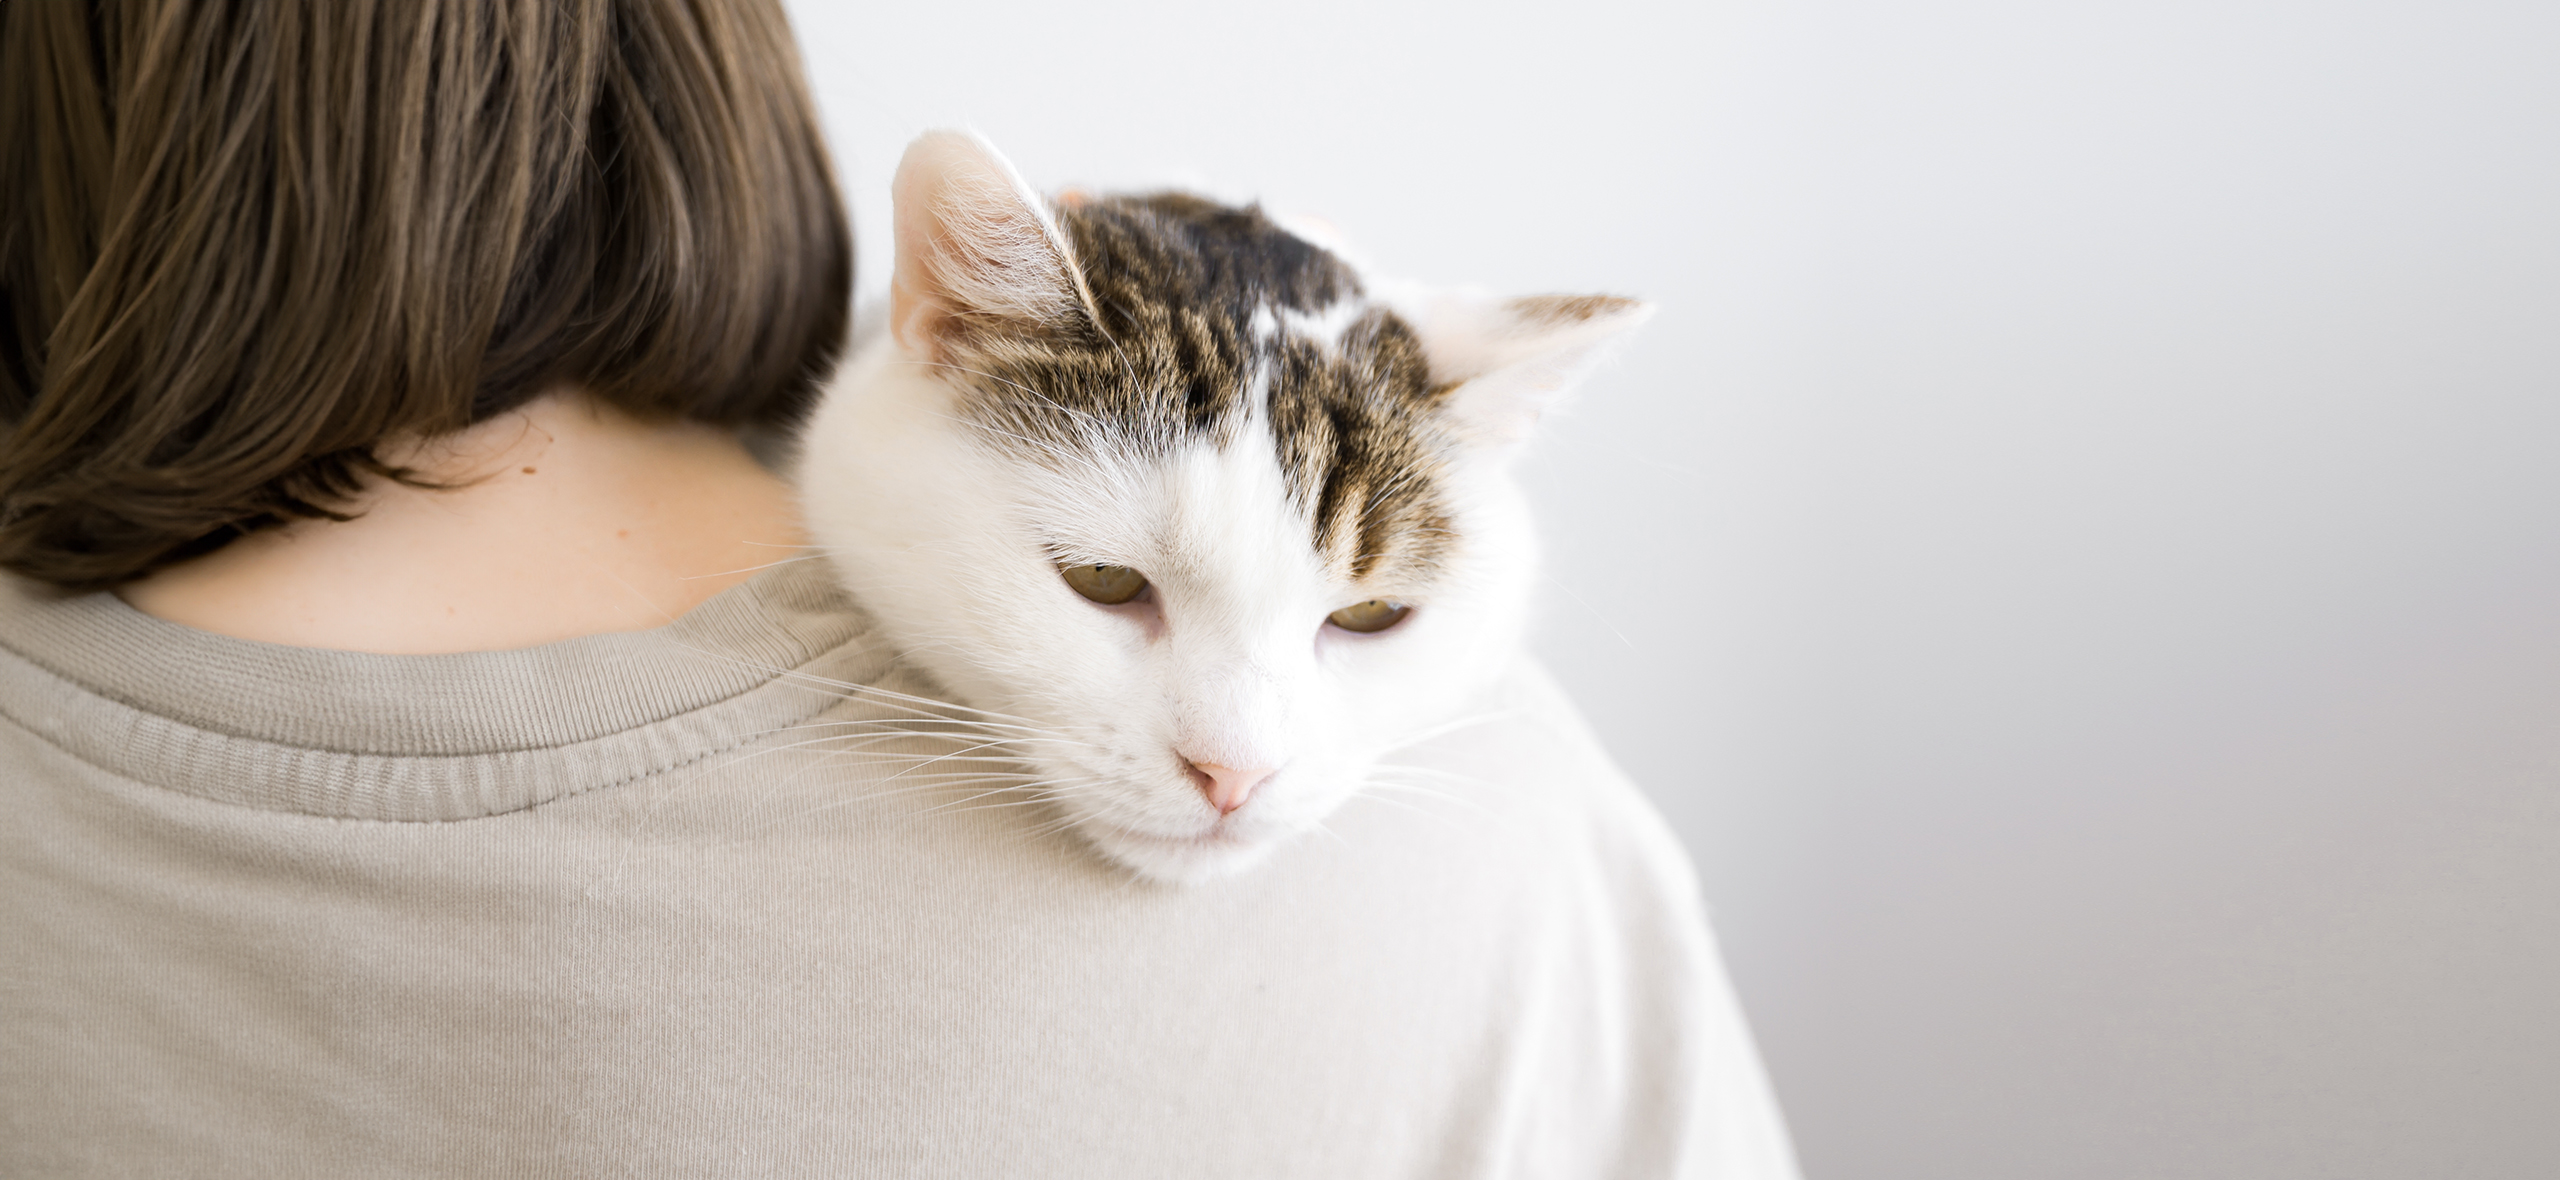 Из-за чего бывает рвота у кошки: причины, симптомы, лечение, первая помощь и профилактика